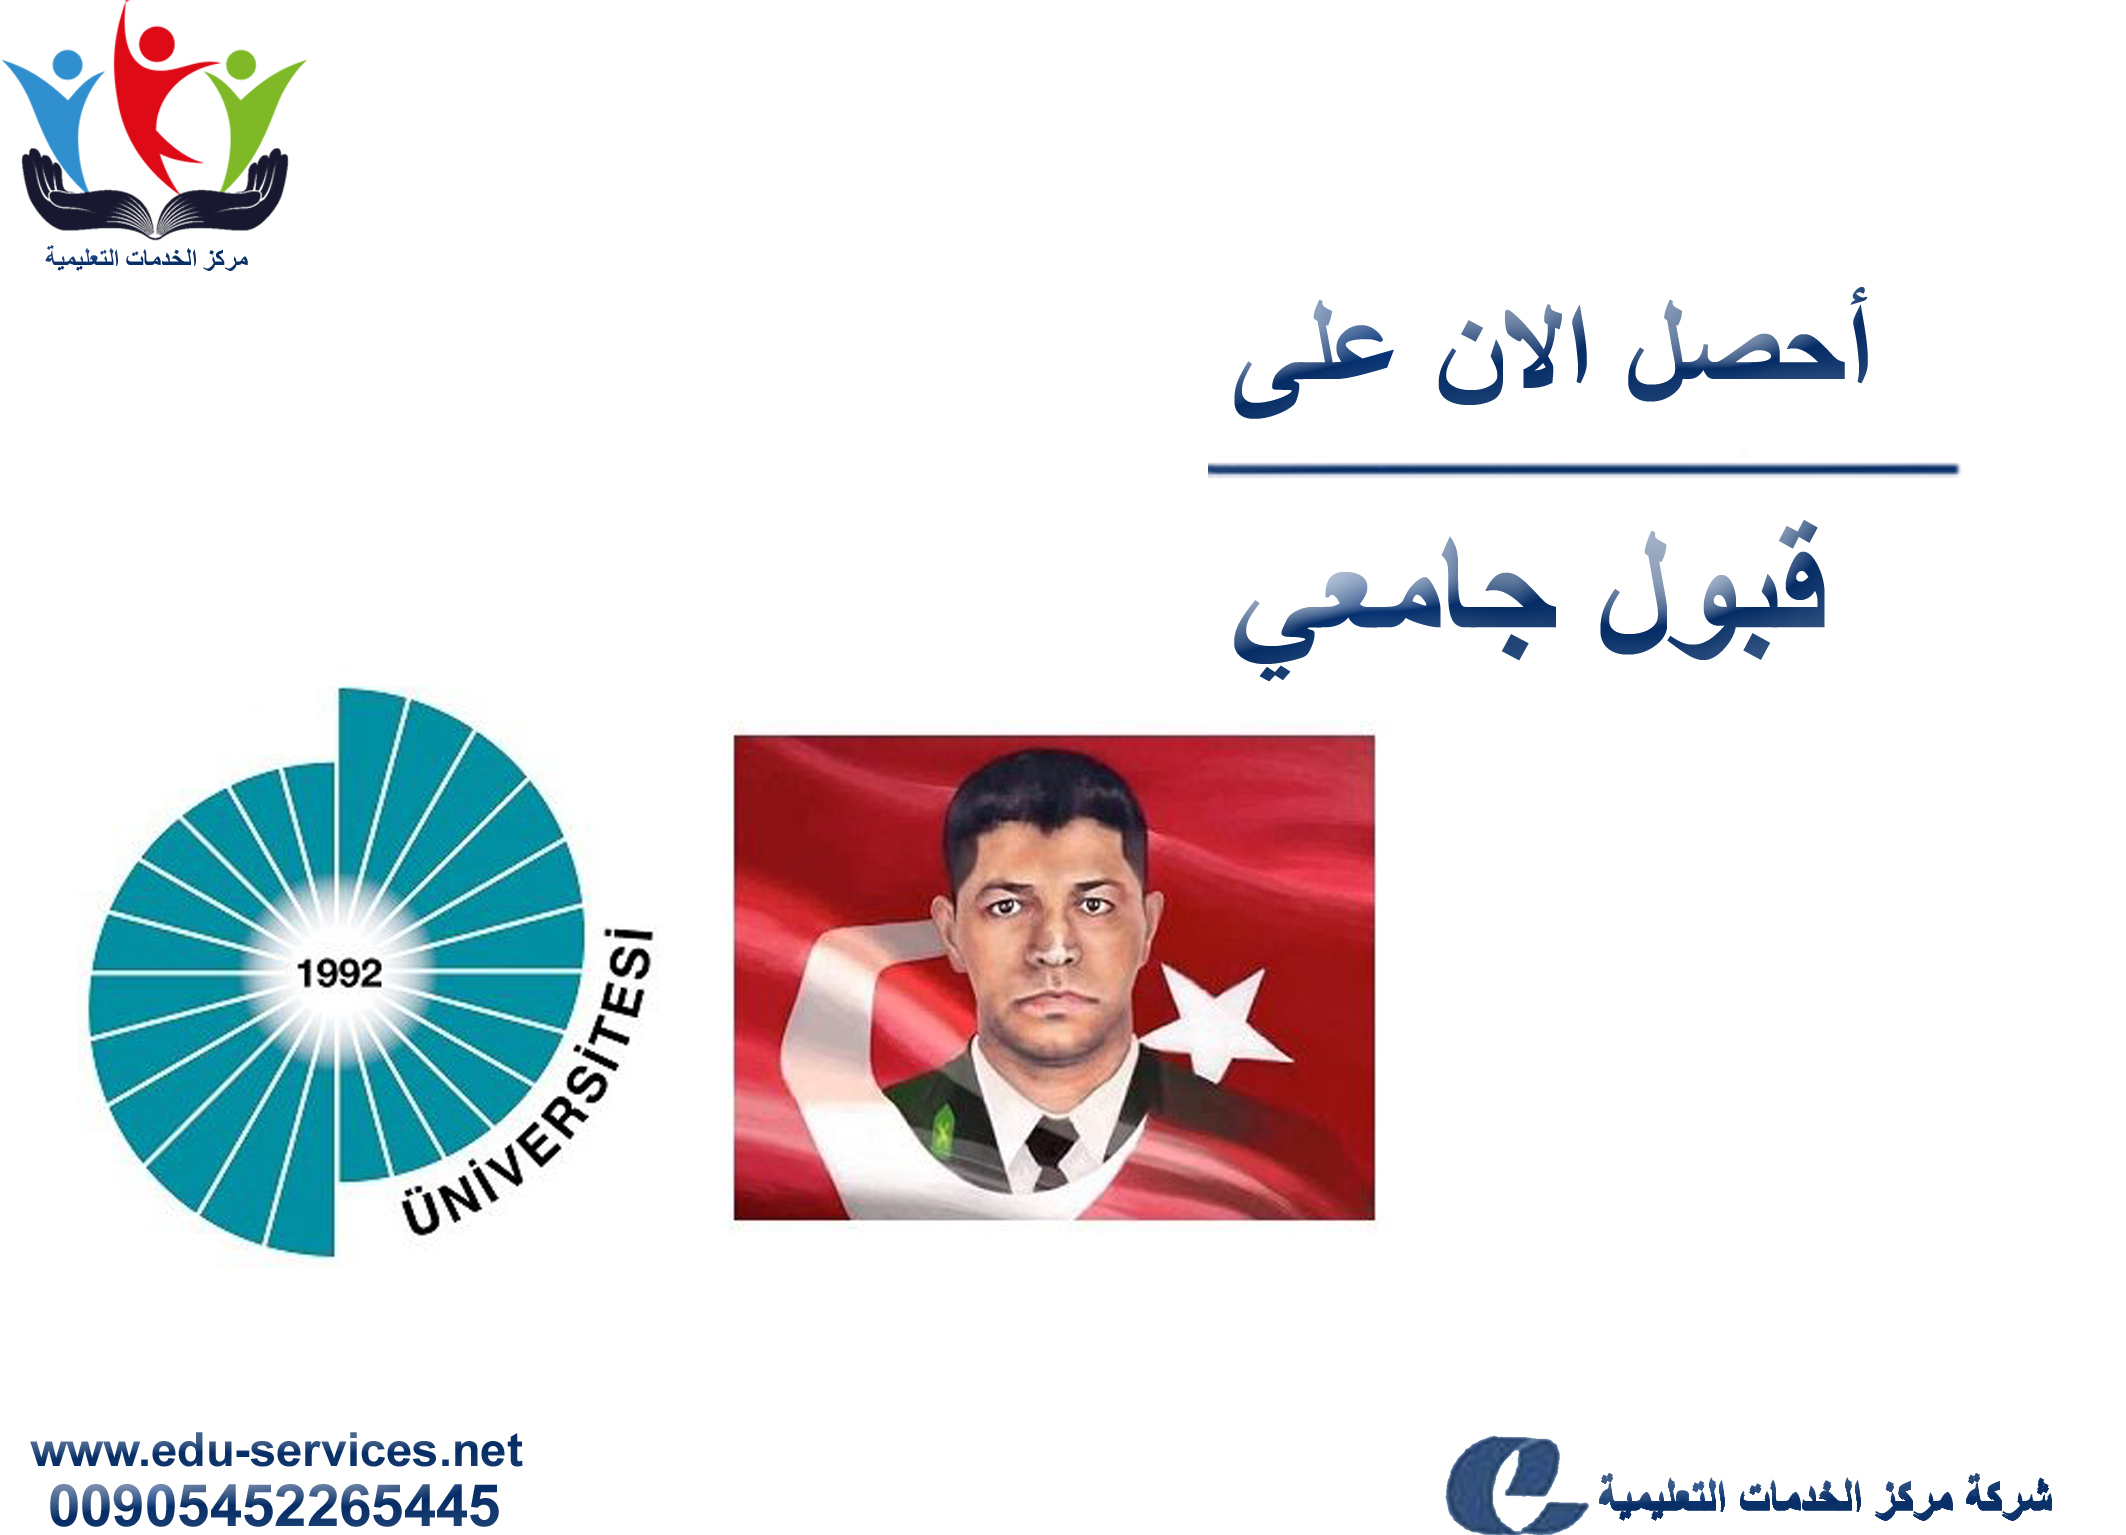 افتتاح التسجيل في جامعة عمر خالص دمير للعام 2018-2019